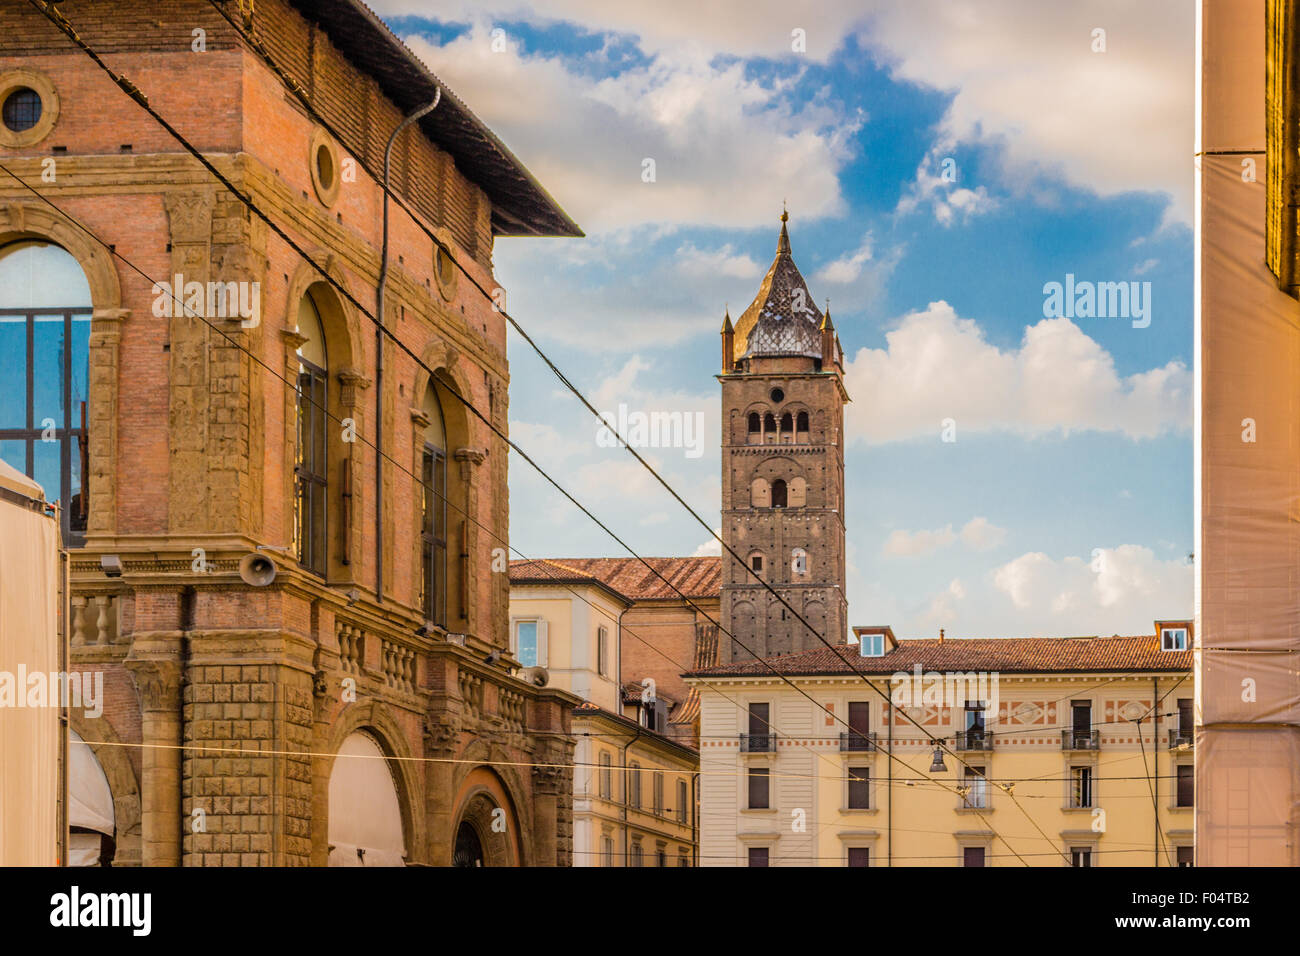 Moderno e vecchi sentimenti insieme mentre si cammina attraverso vicoli, portici e gli antichi edifici del centro storico di Bologna in Italia settentrionale Foto Stock